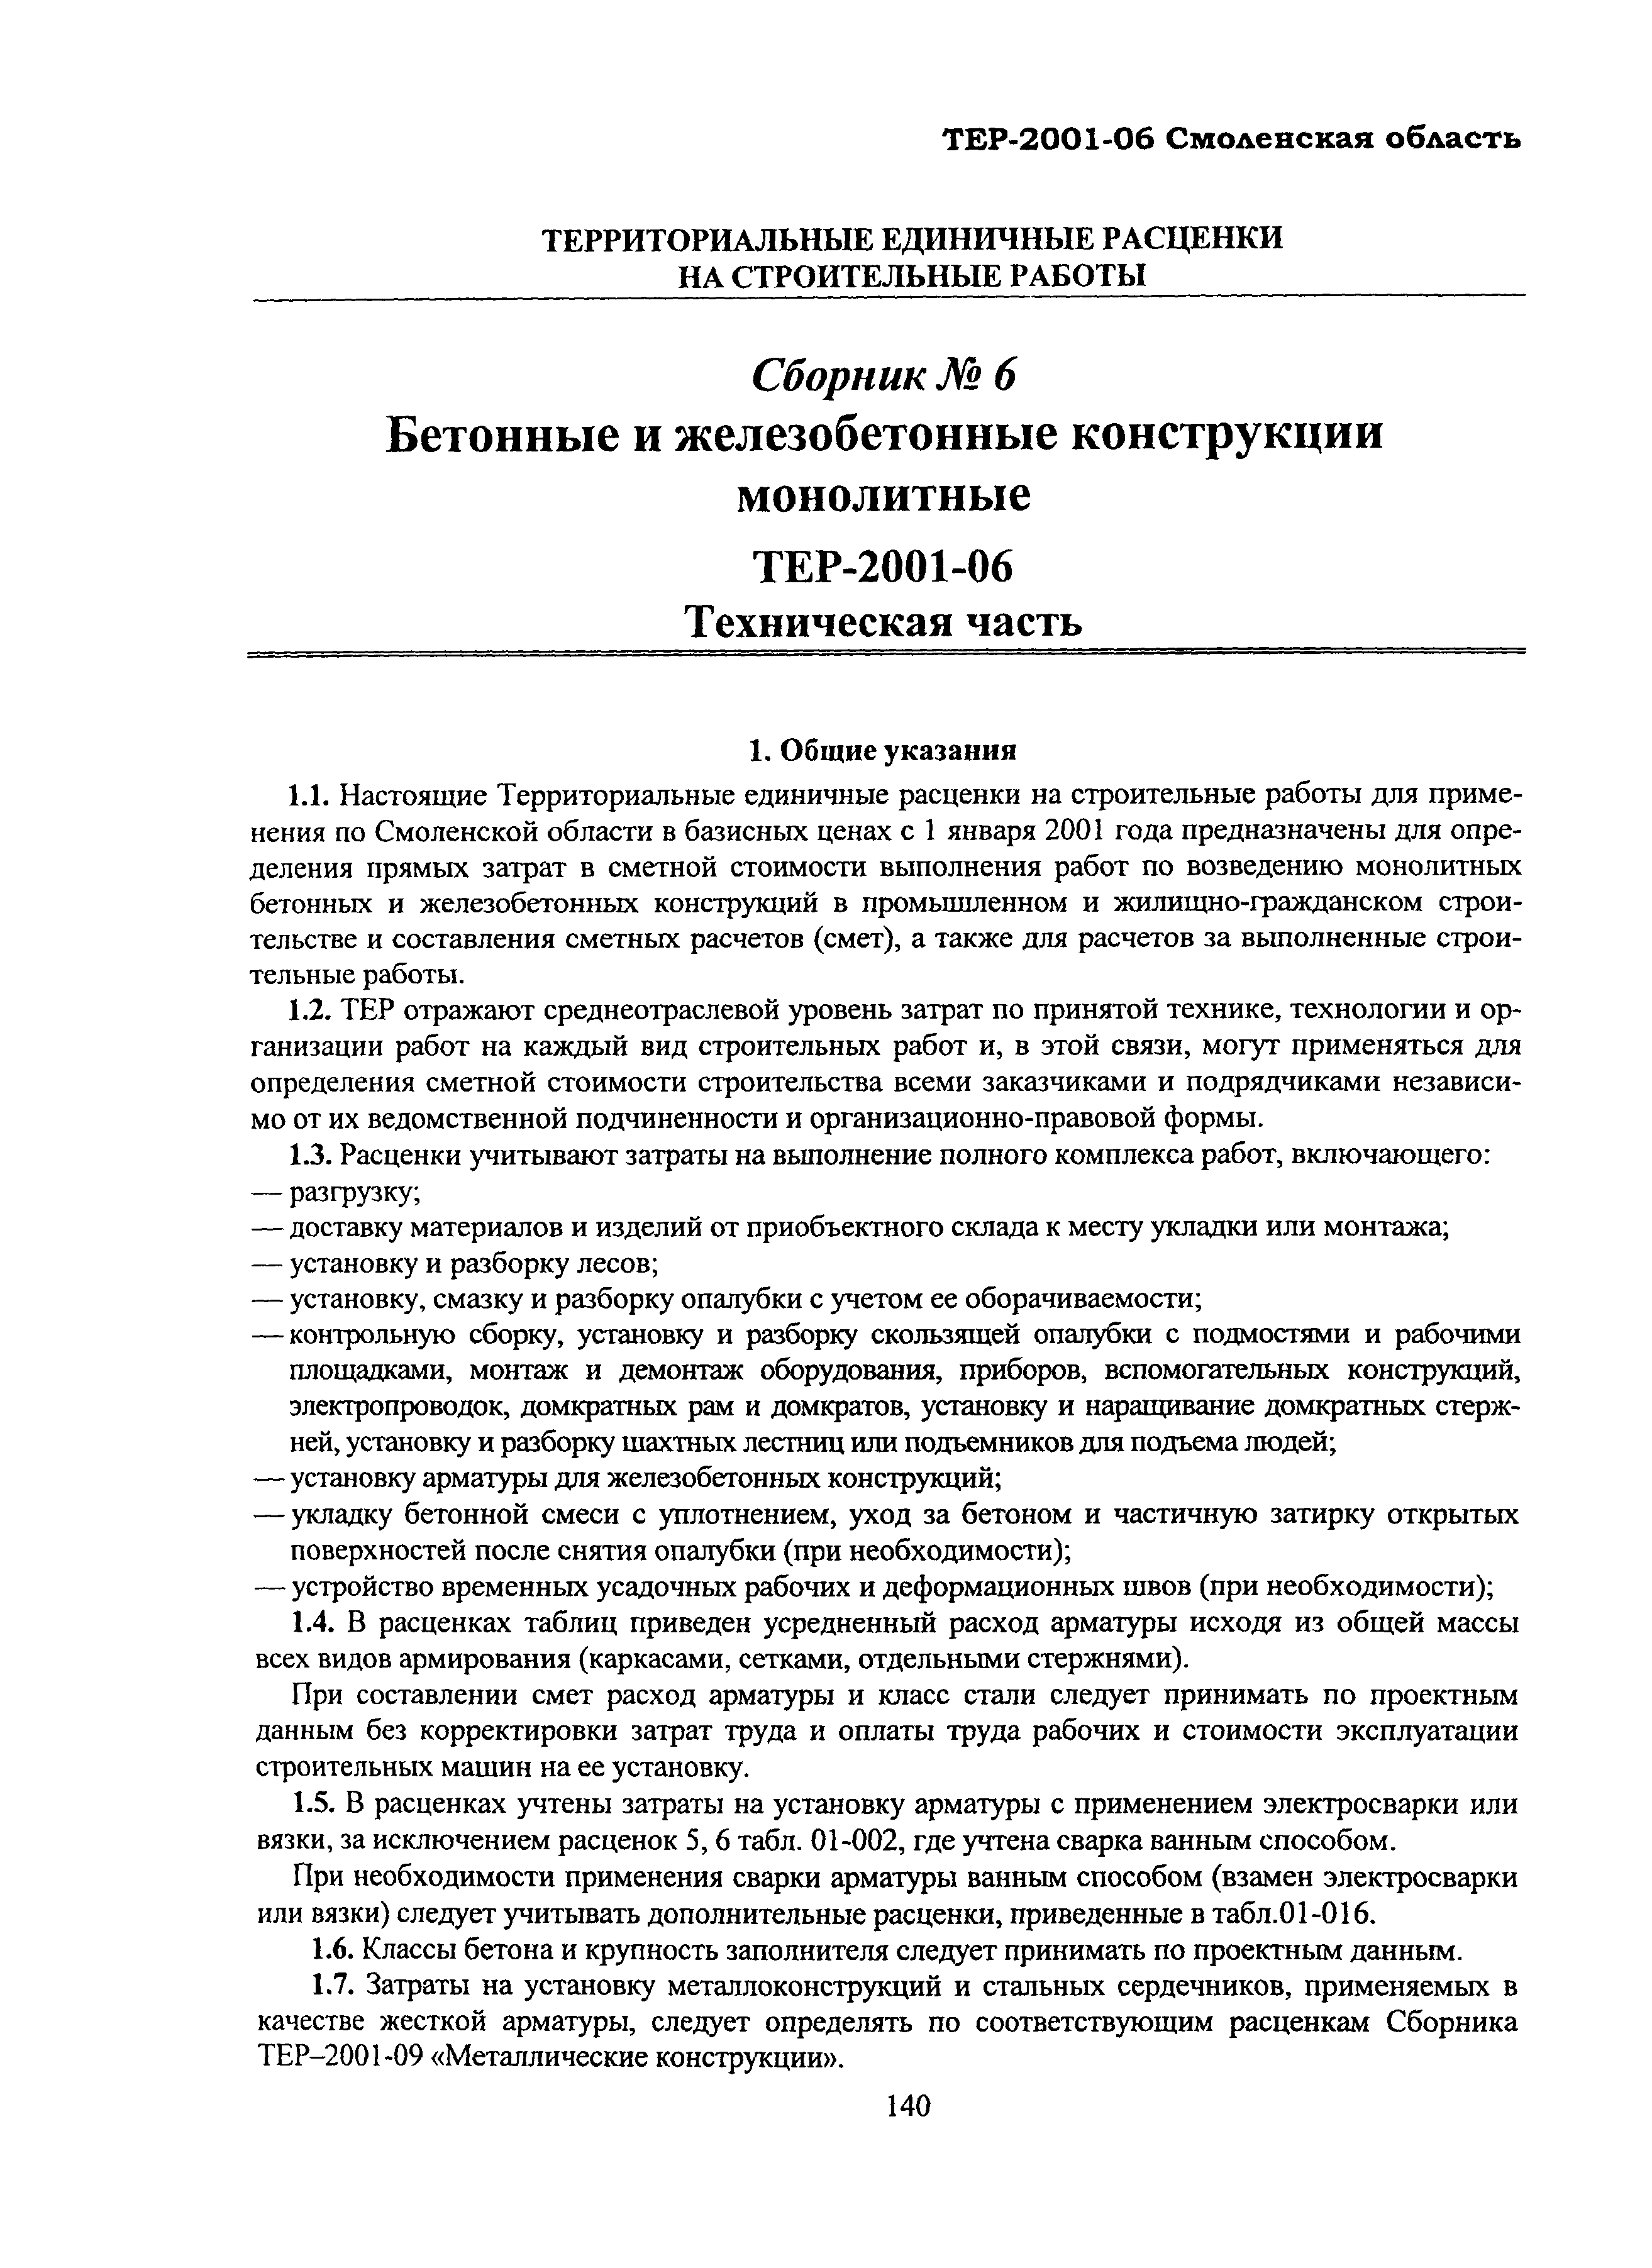 ТЕР Смоленской обл. 2001-06